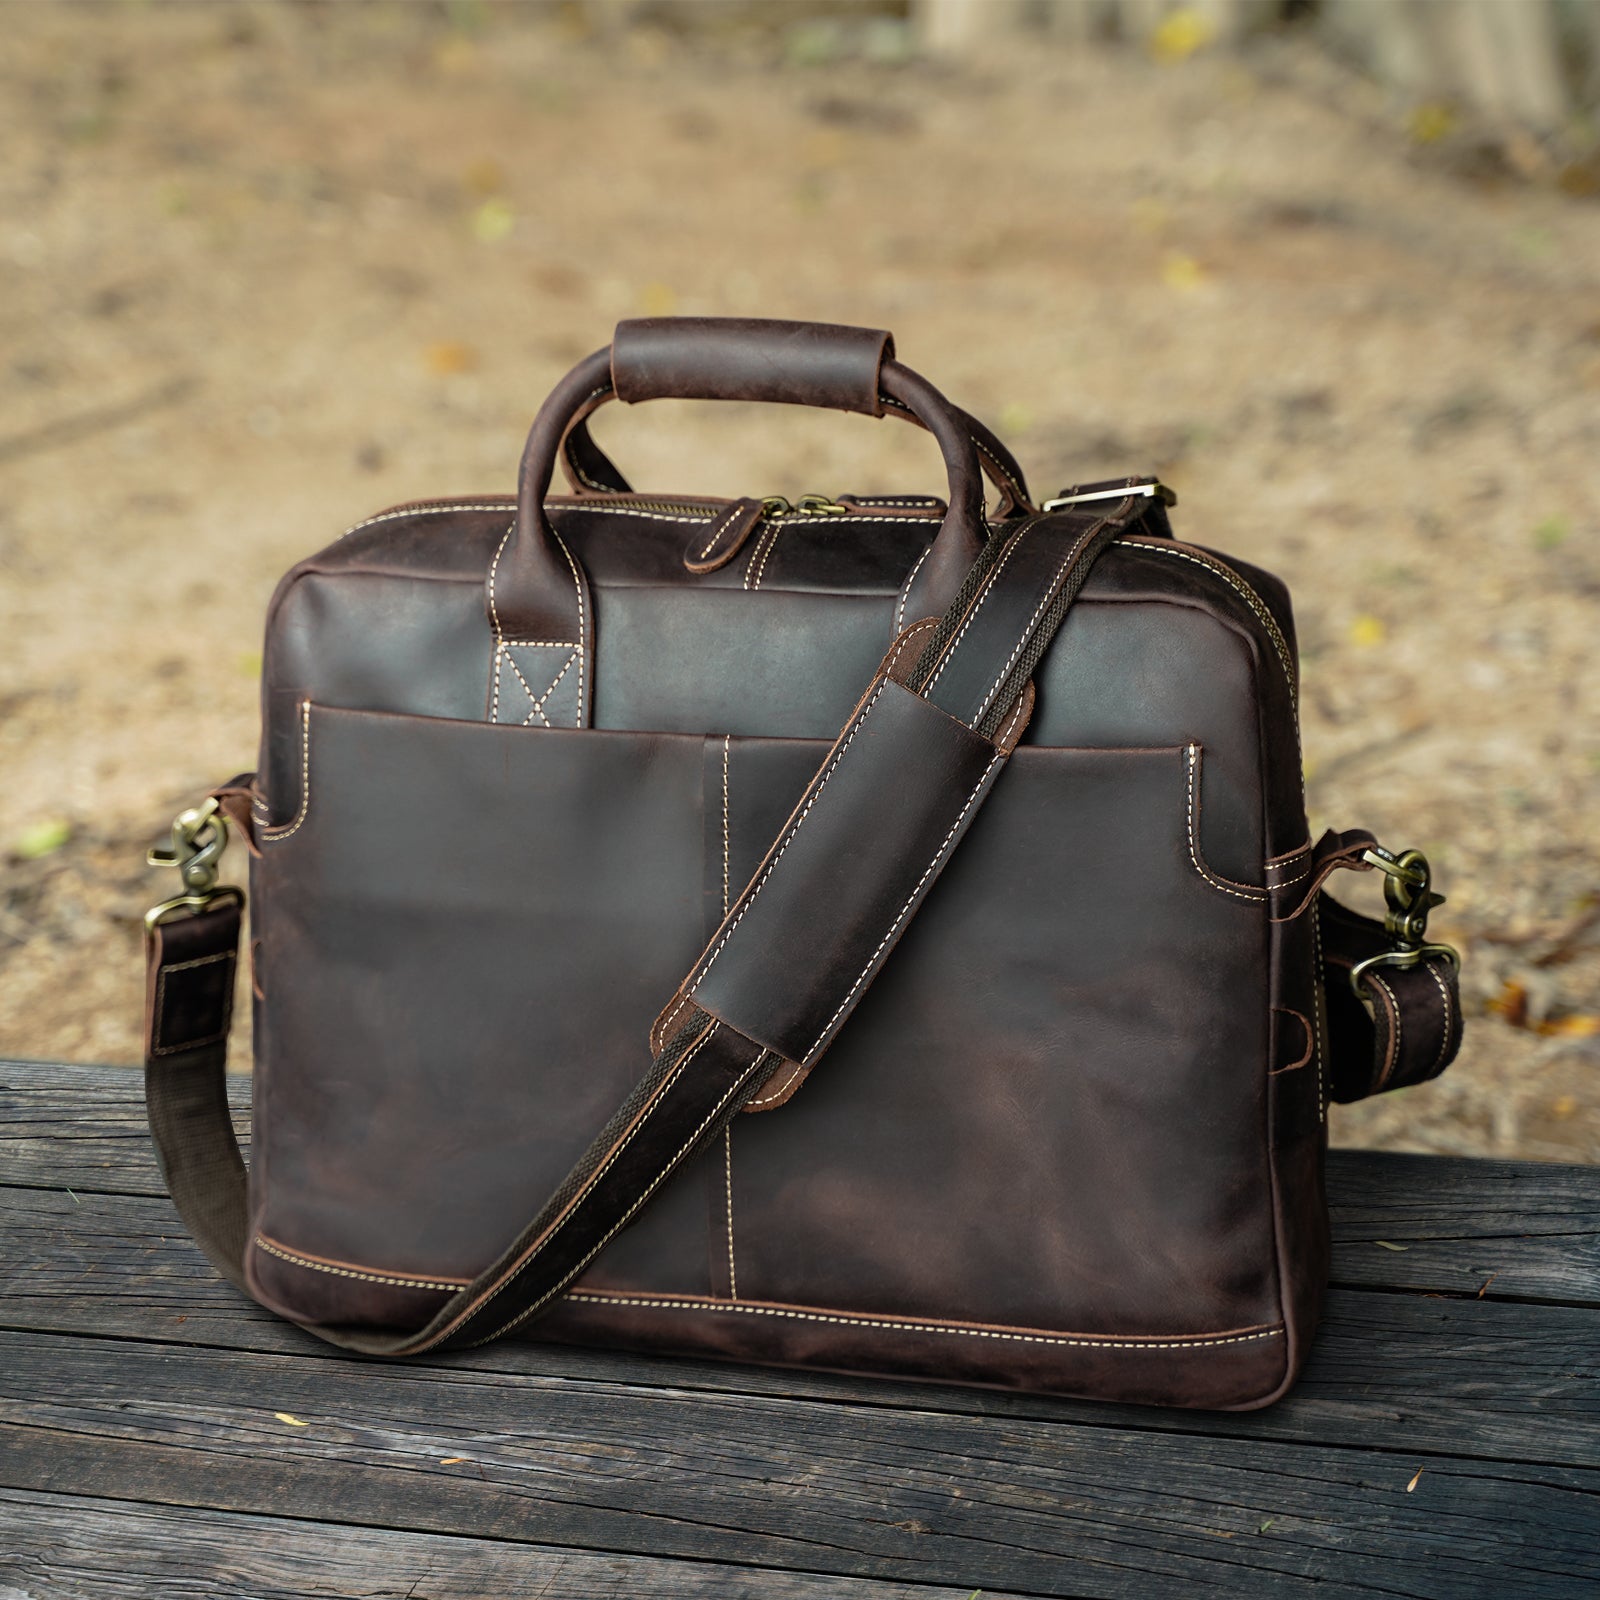 SPAHER Mens Leather Laptop Bag Briefcases For Men 15.6 Inch Leather Briefcase Business Work Laptop Handbag Shoulder Bag Messenger Bag with Removable